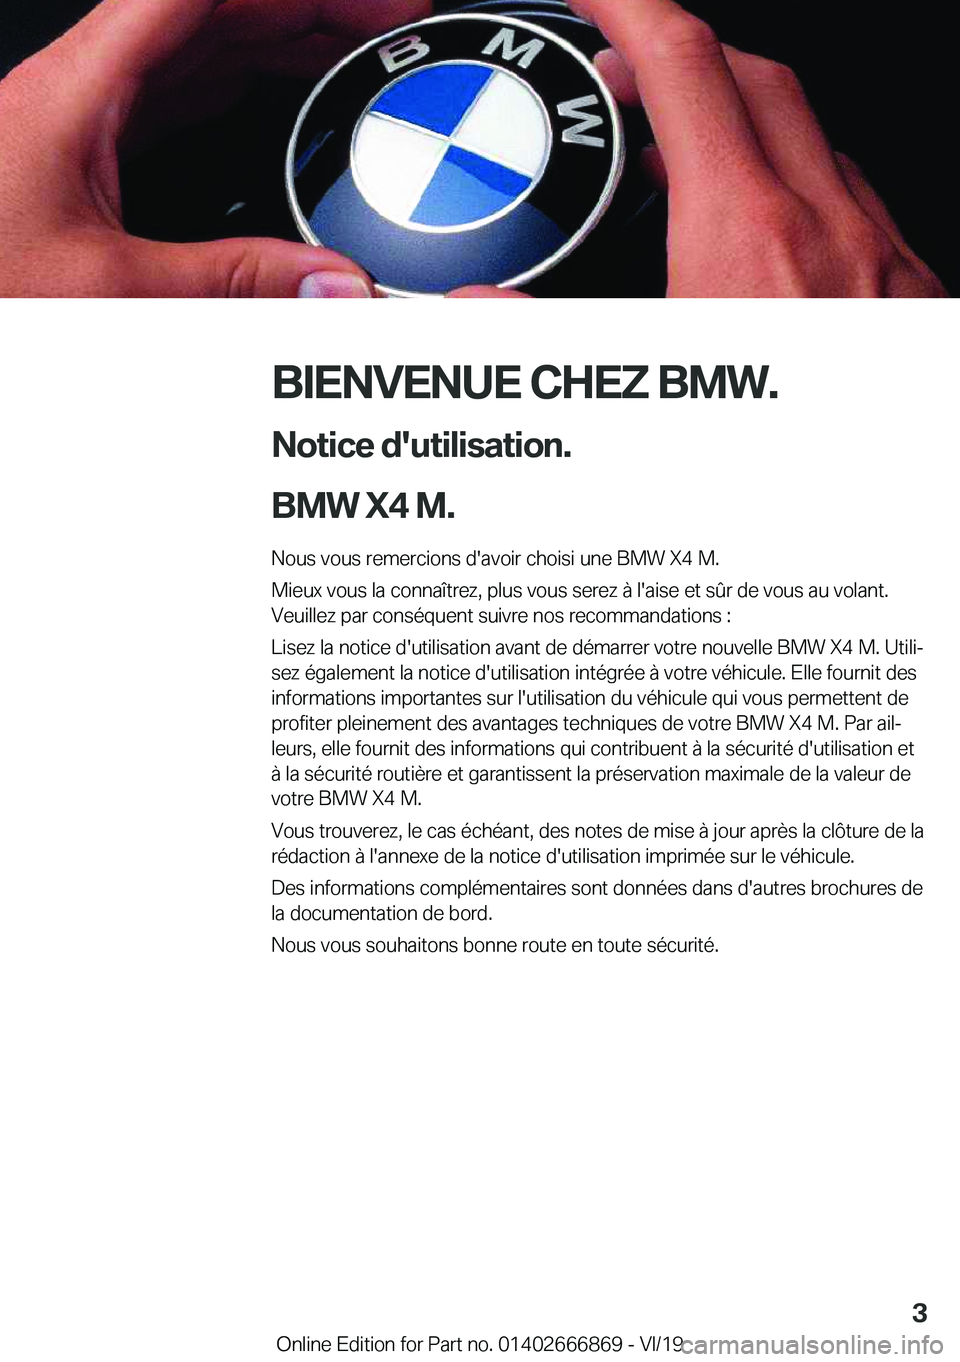 BMW X4 M 2020  Notices Demploi (in French) �B�I�E�N�V�E�N�U�E��C�H�E�Z��B�M�W�.�N�o�t�i�c�e��d�'�u�t�i�l�i�s�a�t�i�o�n�.
�B�M�W��X�4��M�. �N�o�u�s��v�o�u�s��r�e�m�e�r�c�i�o�n�s��d�'�a�v�o�i�r��c�h�o�i�s�i��u�n�e��B�M�W��X�4